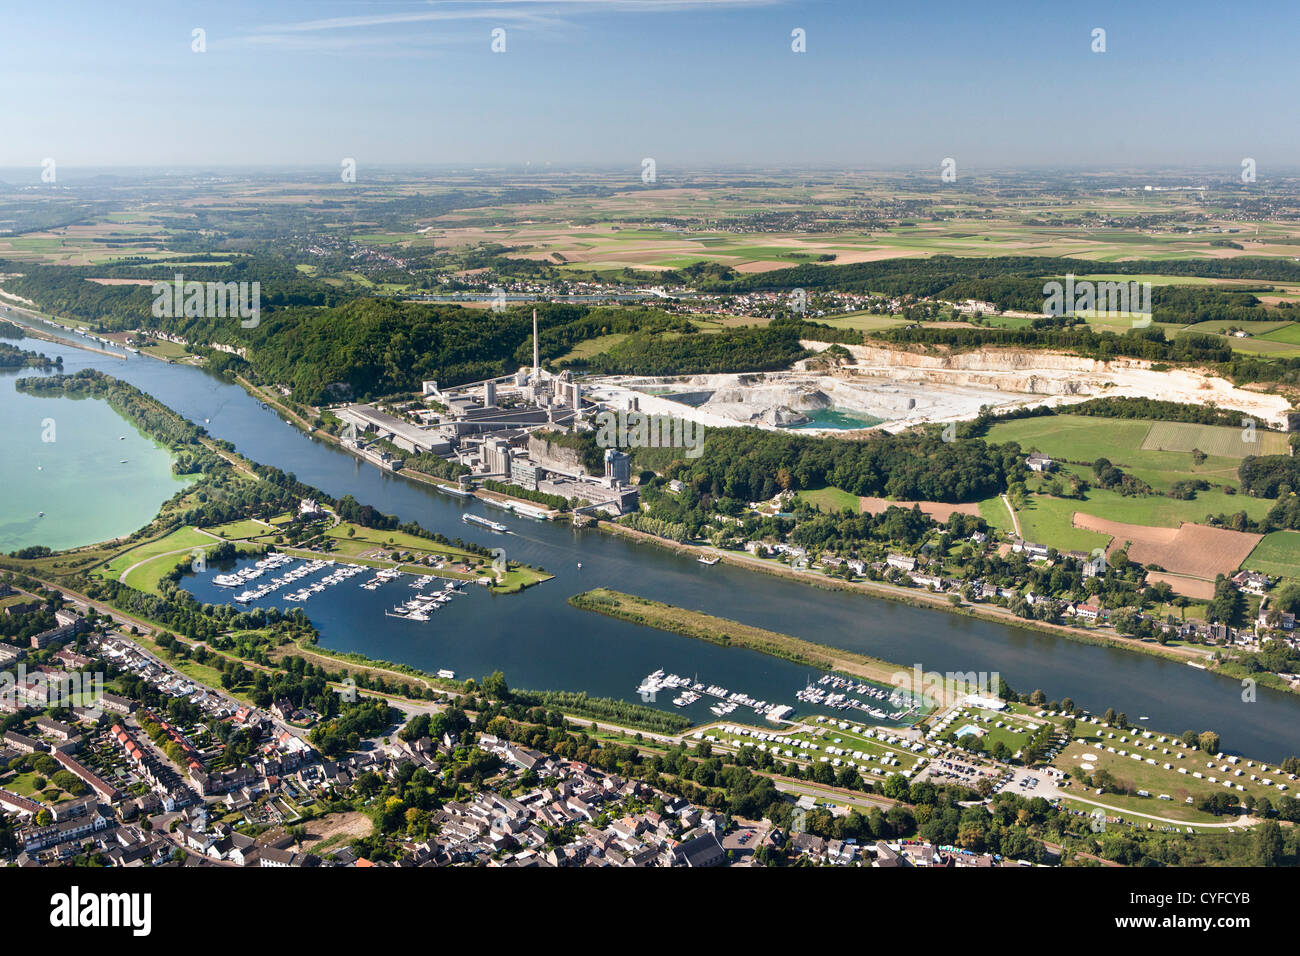 Niederlande, Maastricht, Mergel Steinbruch und Zementfabrik ENCI am Ort namens Sint Pietersberg aufgerufen. Luft. Stockfoto